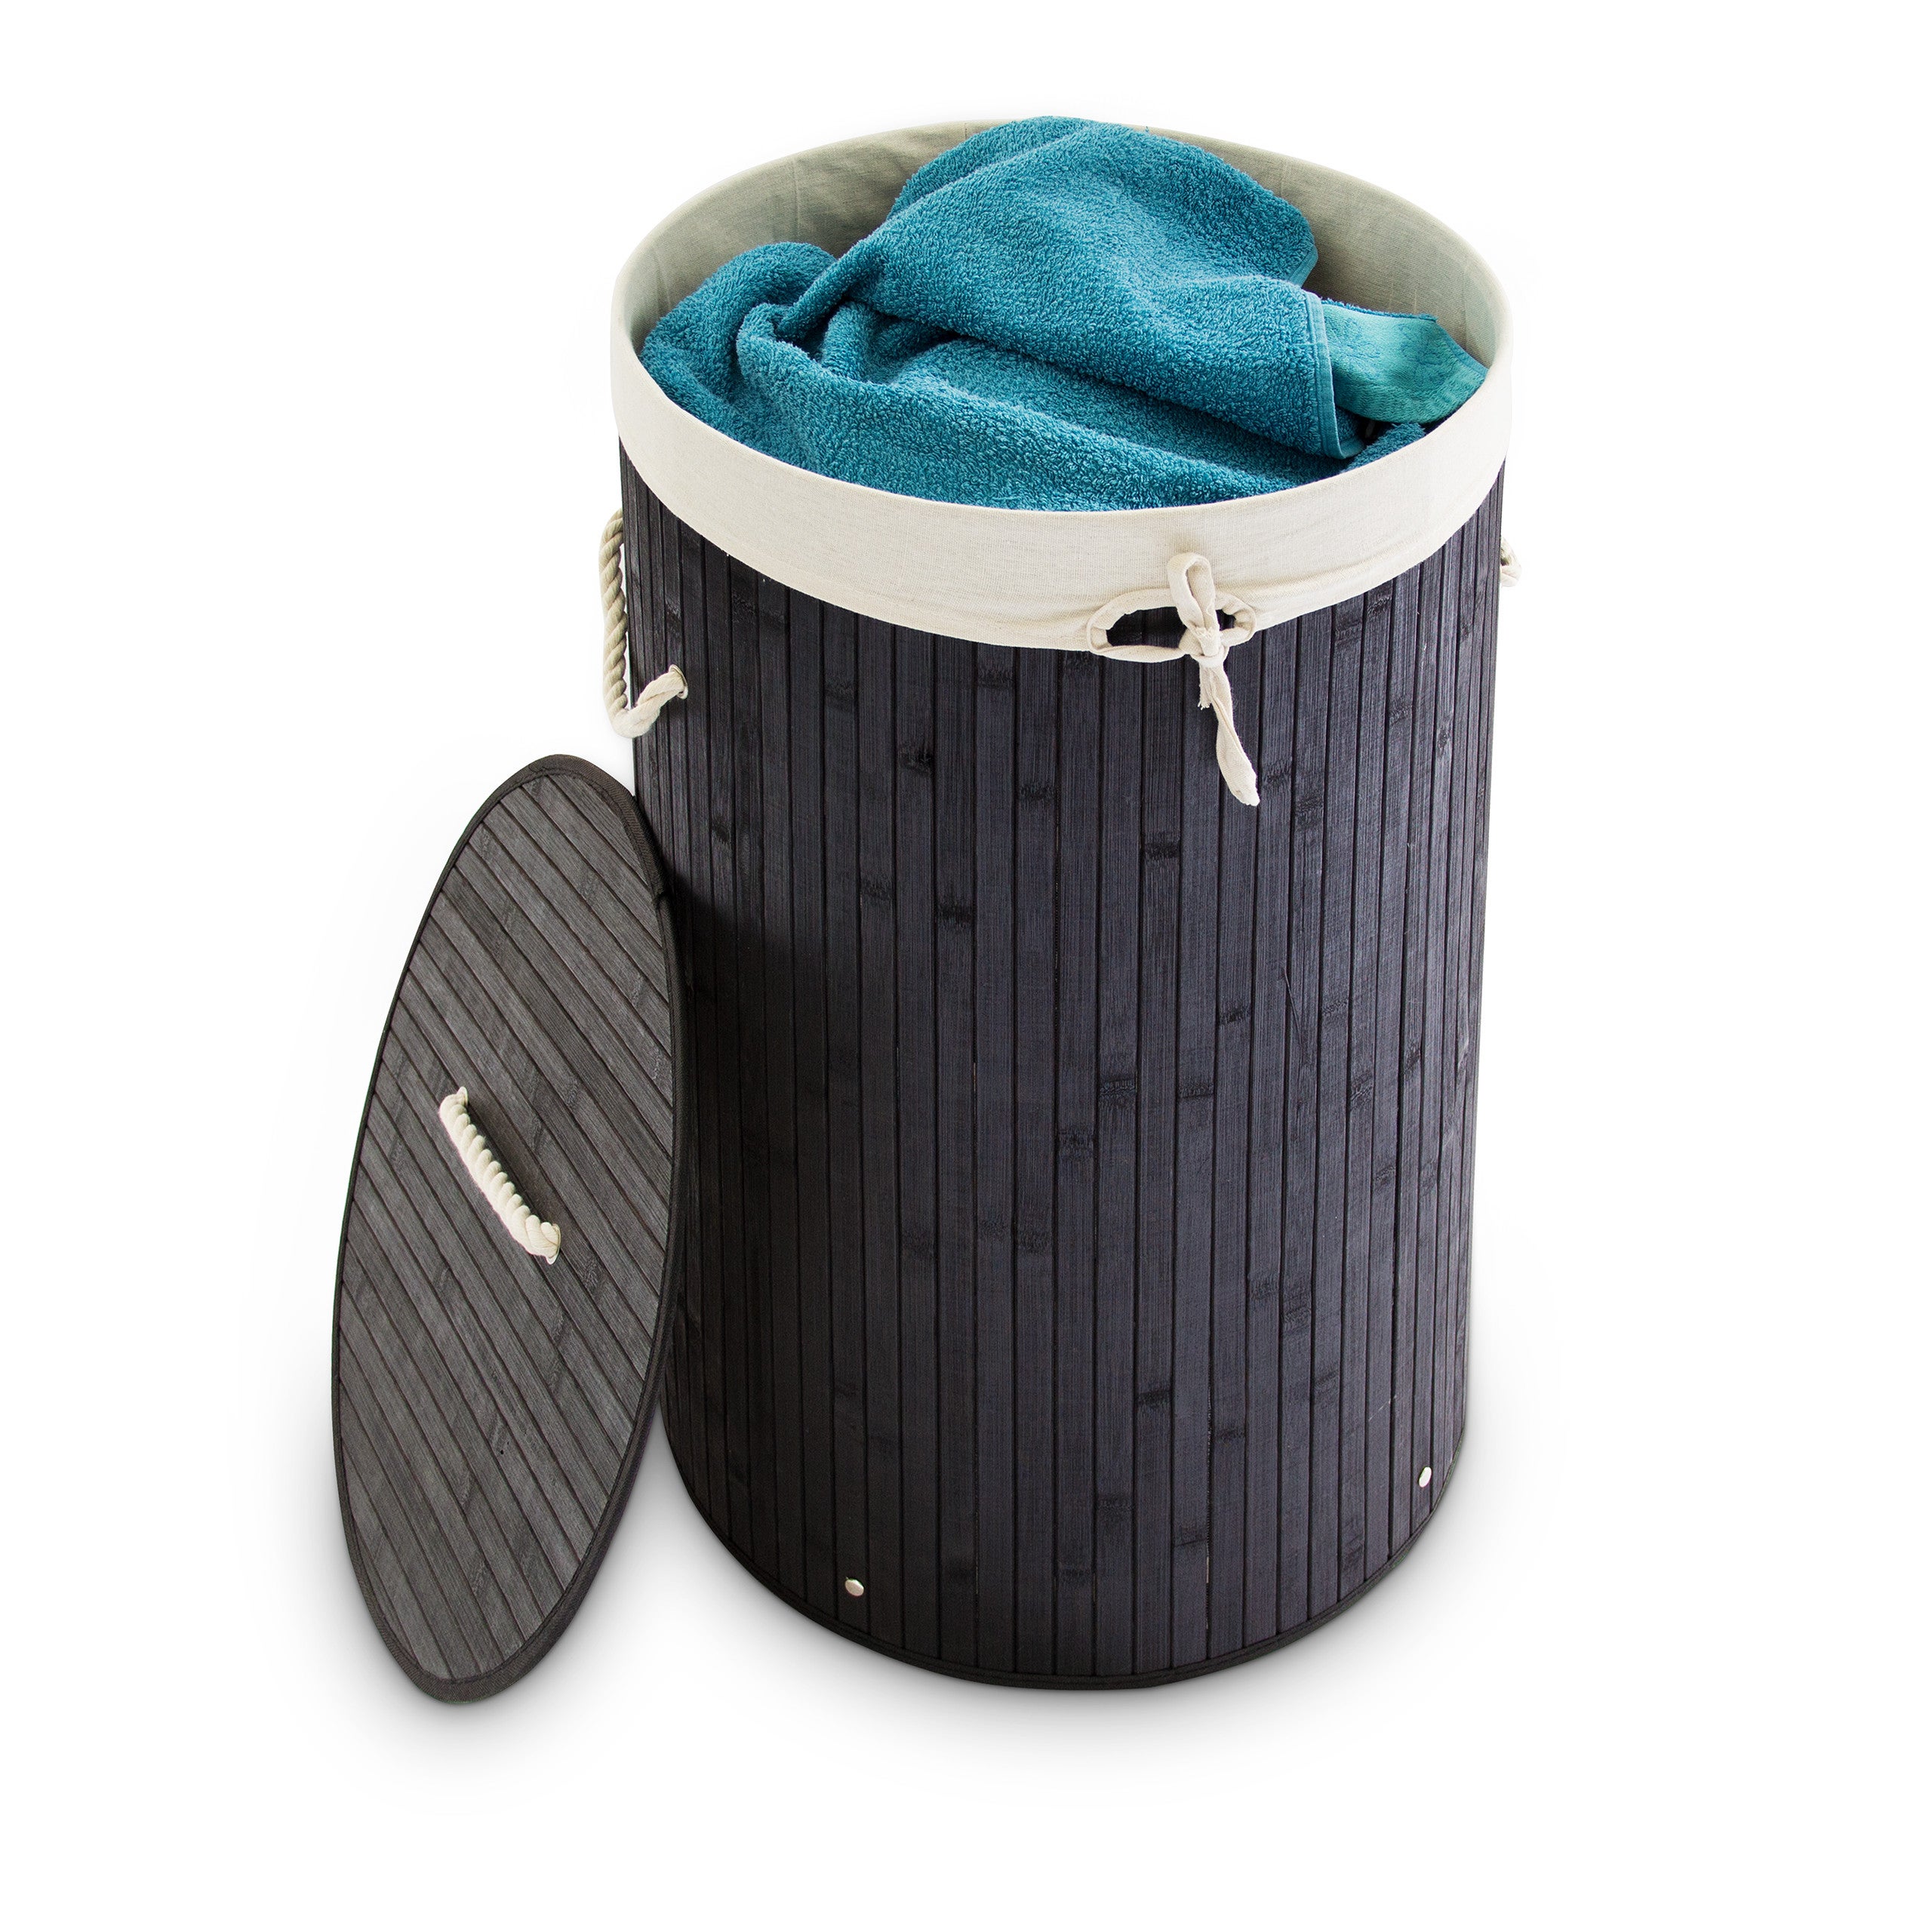 Sac à linge pop-up en filet à laver pliable Panier à linge Sac poubelle Panier de rangement – Soundsbeauty bleu clair 